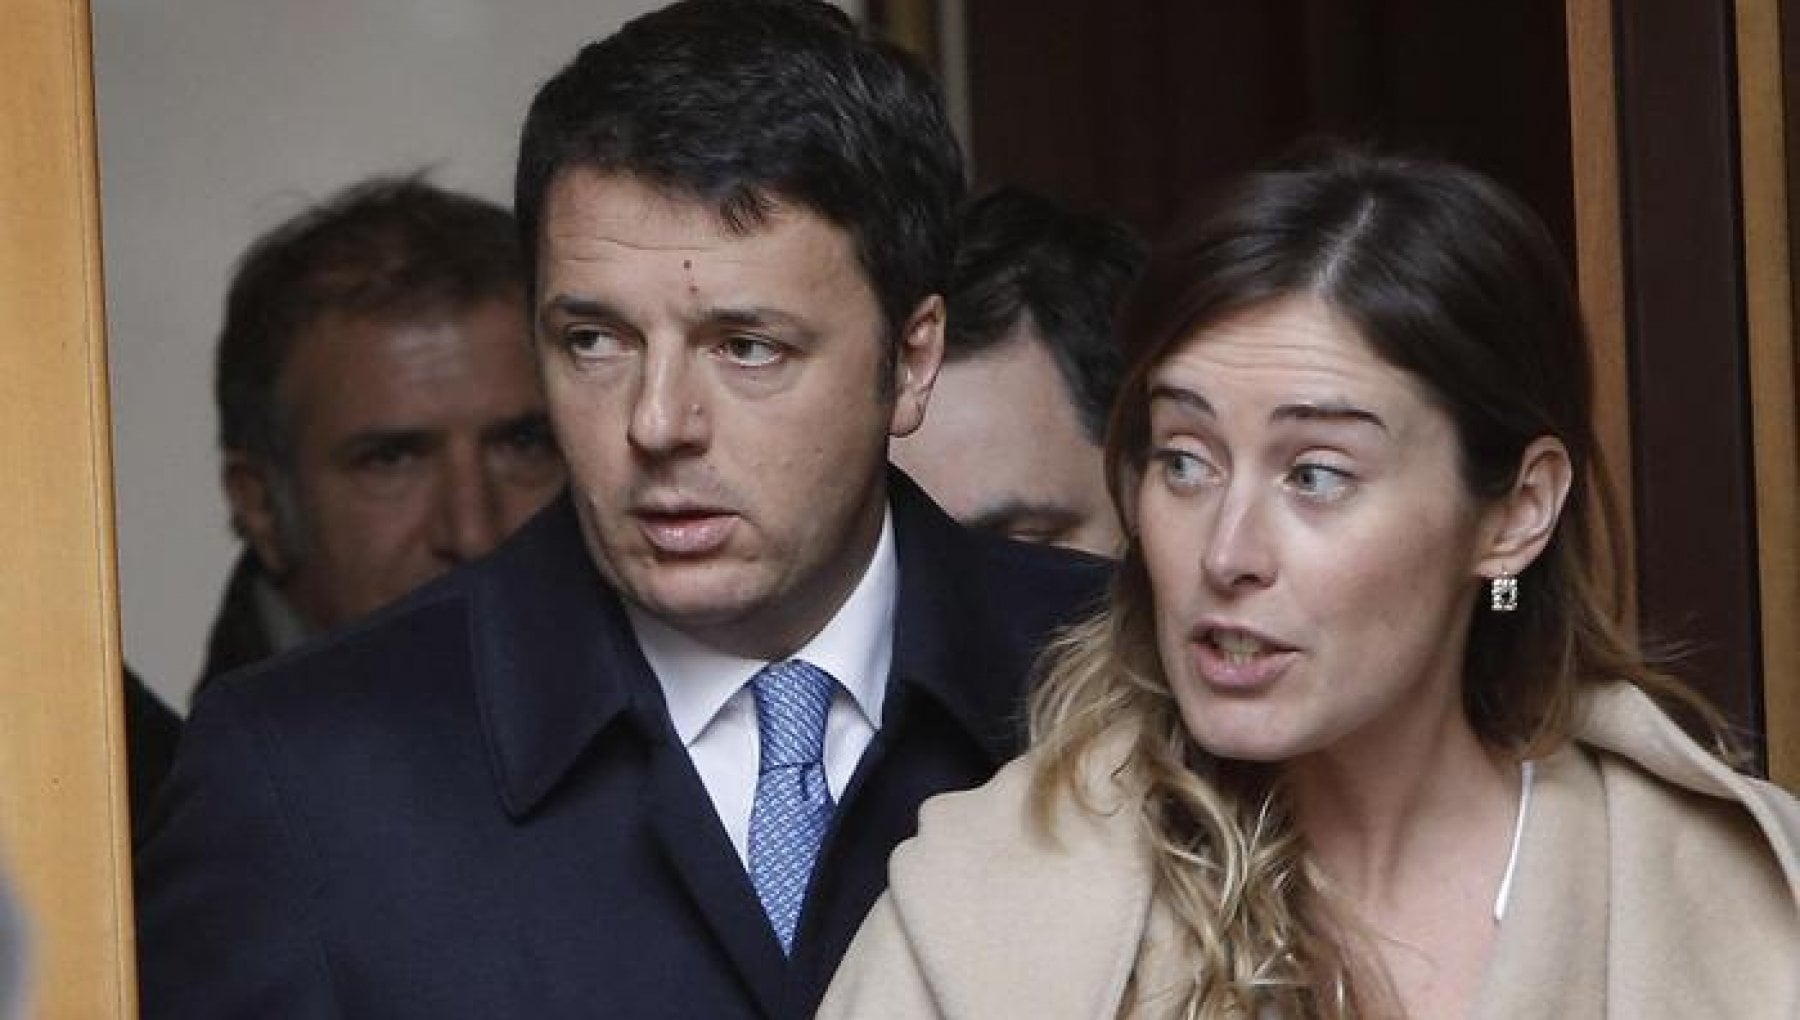 Inchiesta Open: chiesto il rinvio a giudizio per Renzi, Boschi e altri indagati